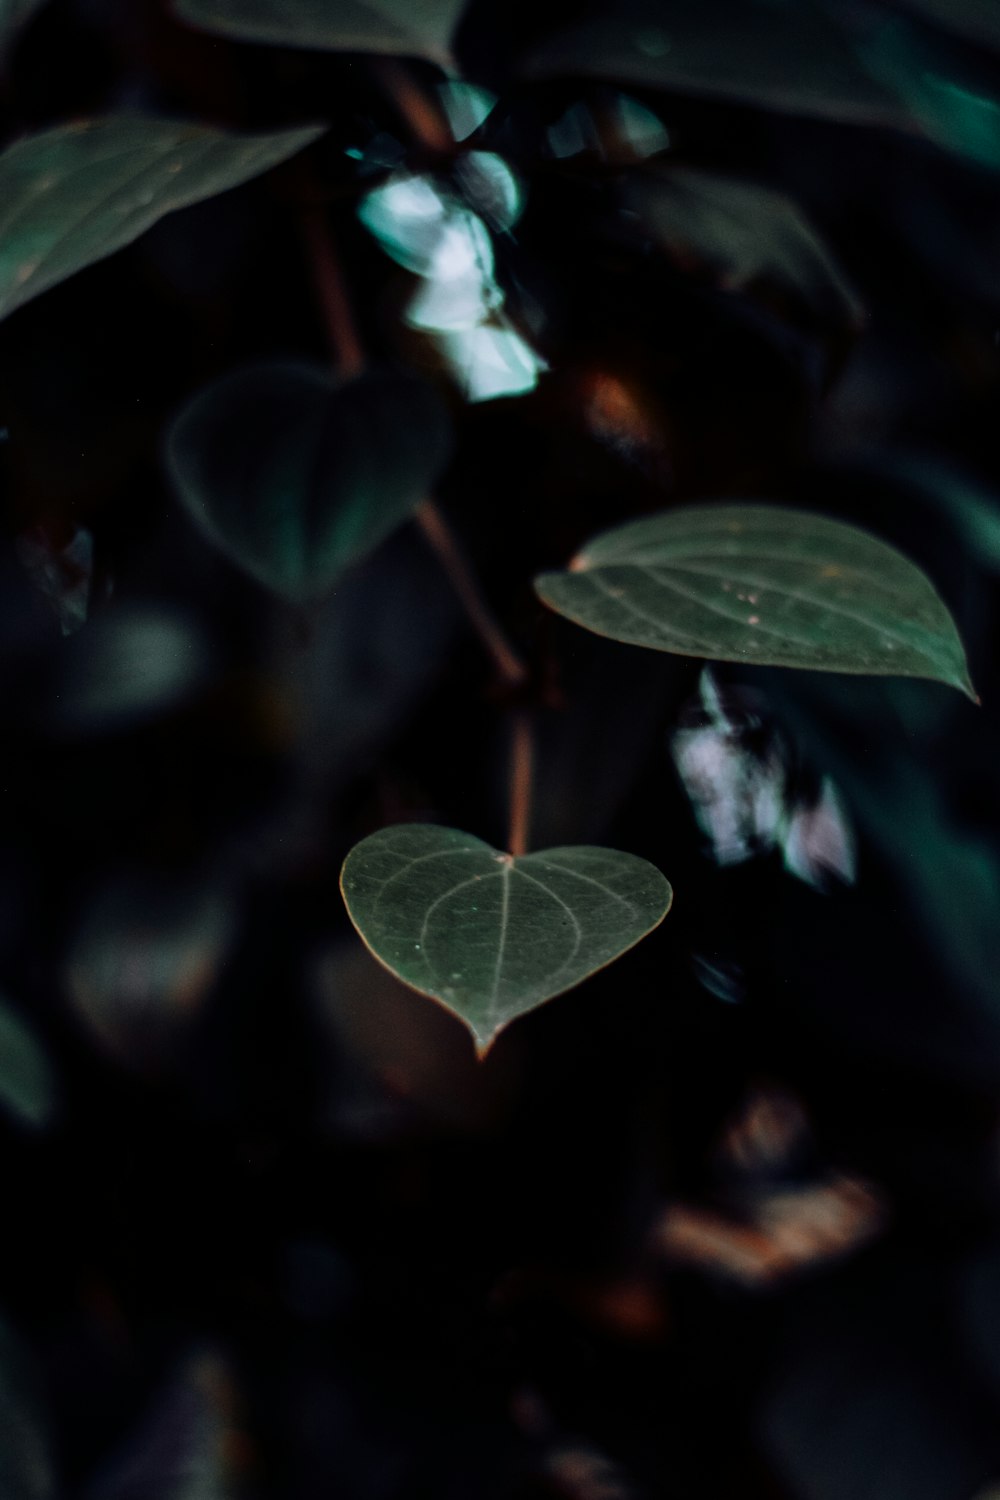 Un primer plano de una planta con hojas